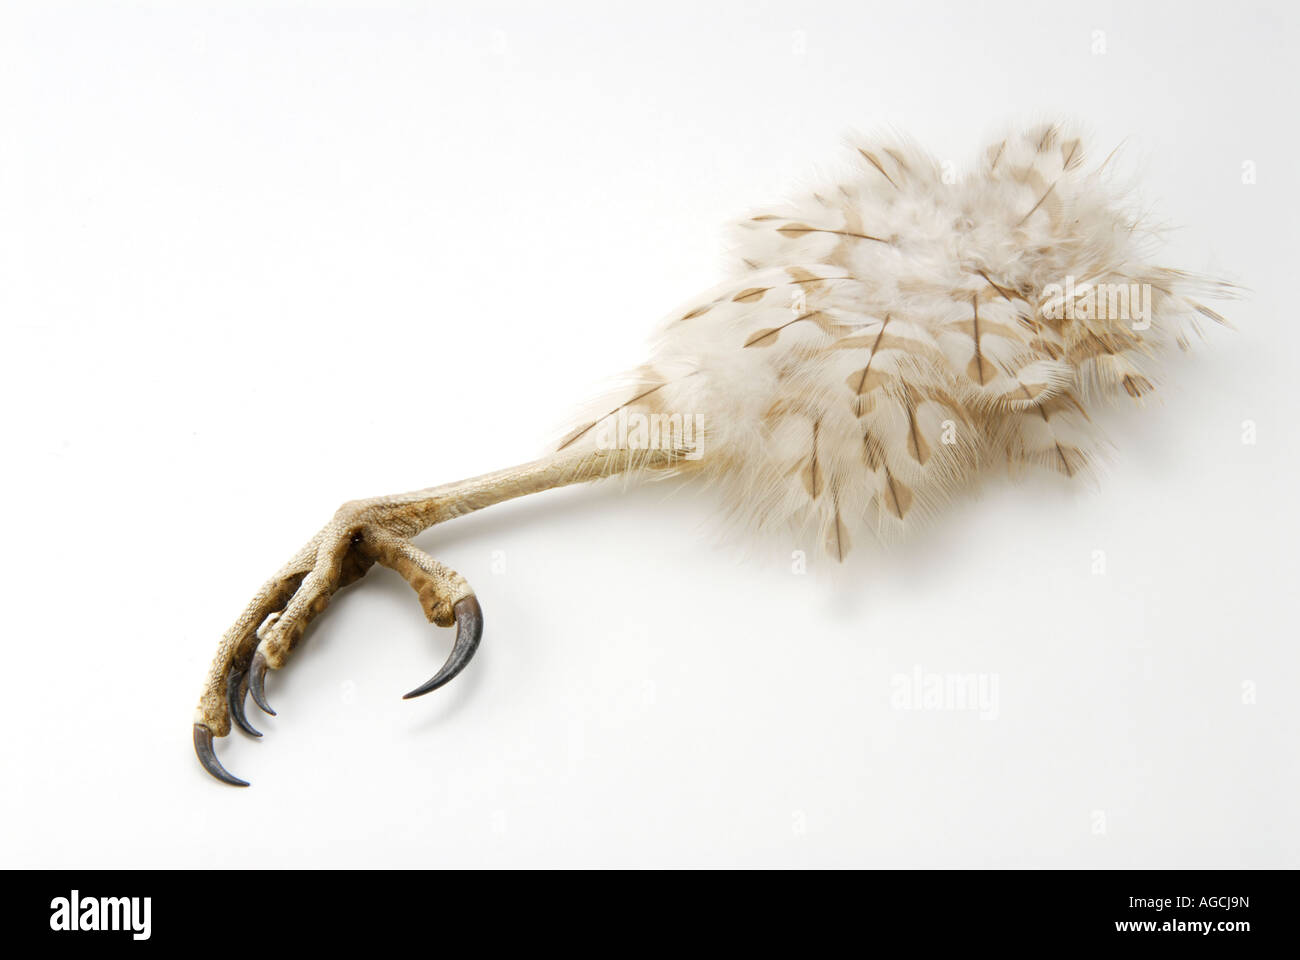 Talon claw of the Cooper's Hawk Accipiter cooperii Stock Photo